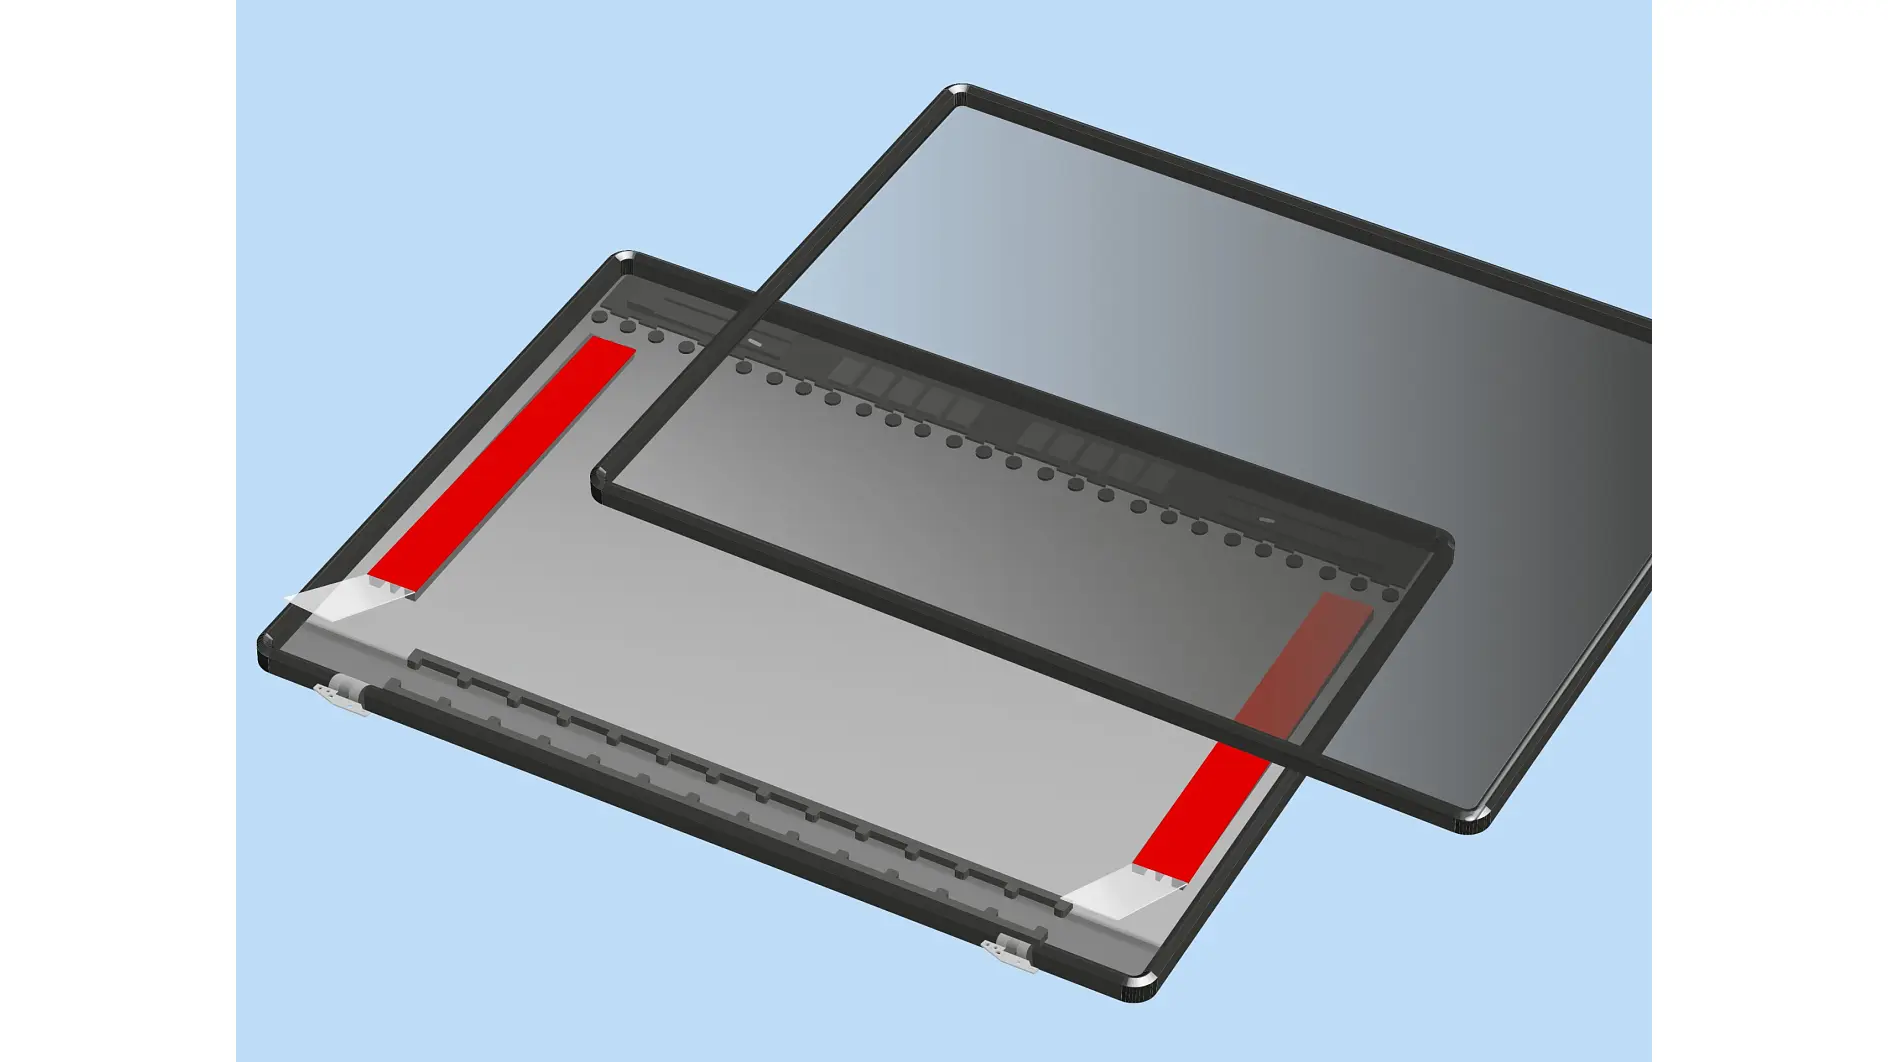 tesa-electronics-laptop-screen-mounting-illustration